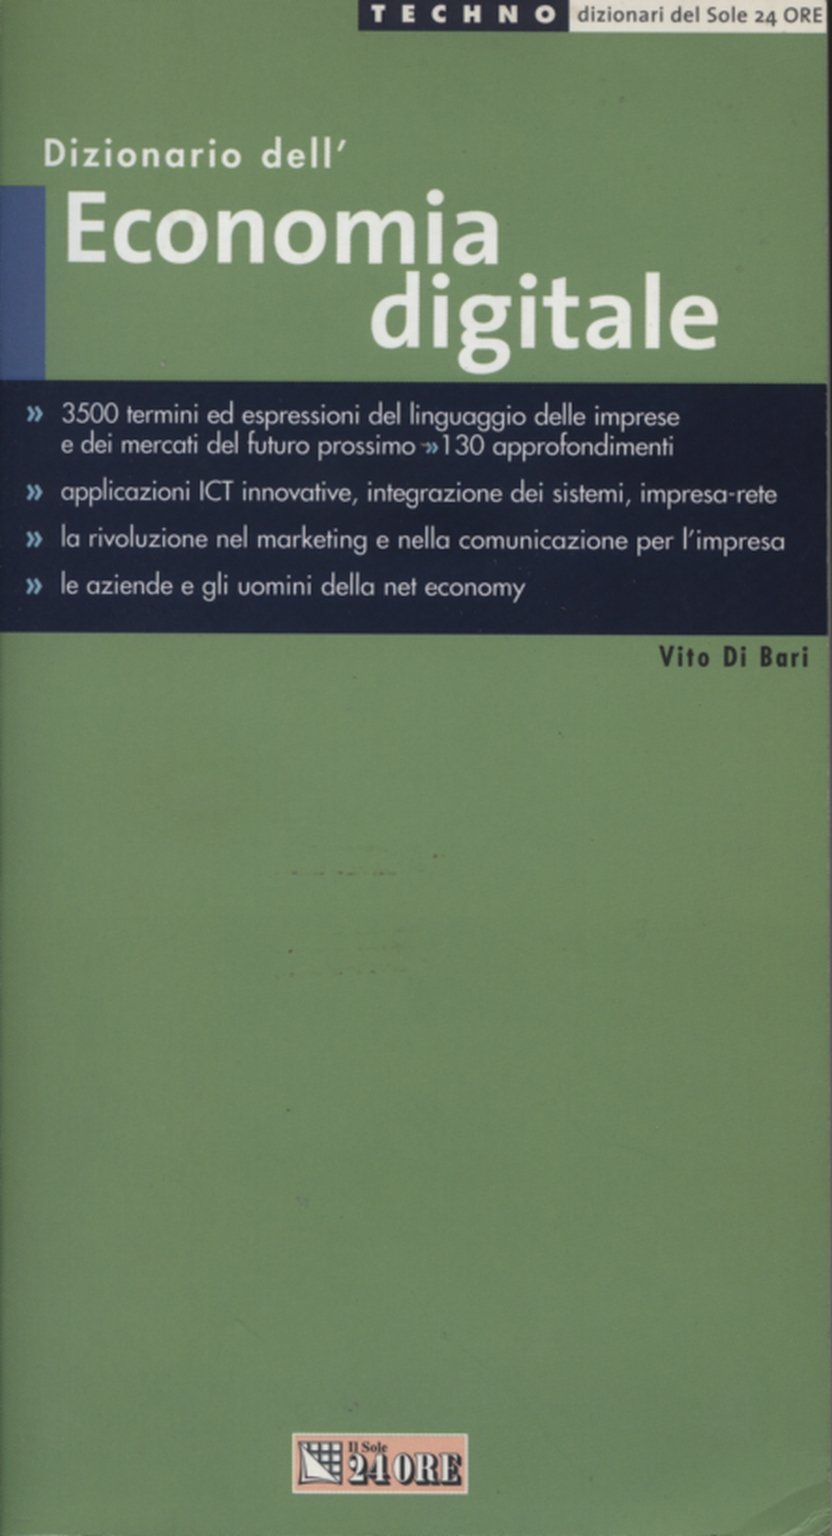 Dictionary of the Digital Economy, Vito di Bari